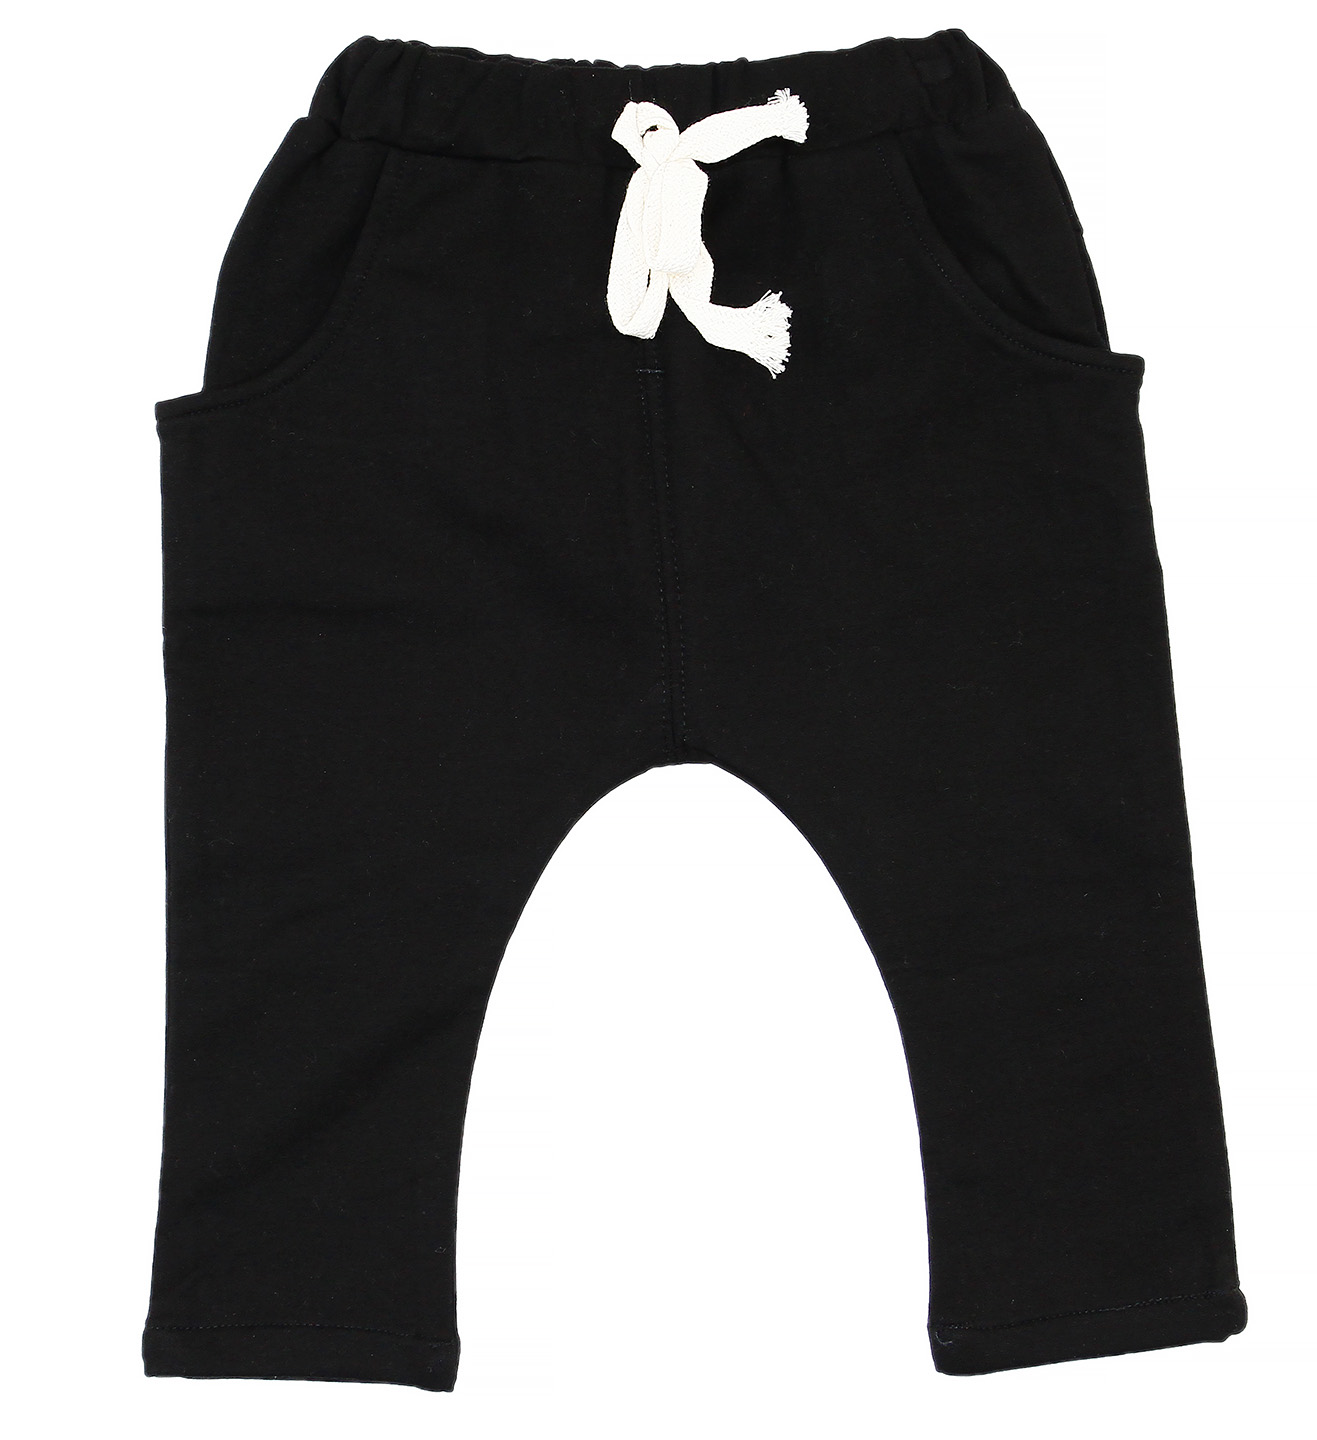 B-8225 Трикотажные штаны (Р-р: 2; Цв.: Черный; Возраст: 6 месяцев; Рост: 68 см; Длина штанины: 20 см)